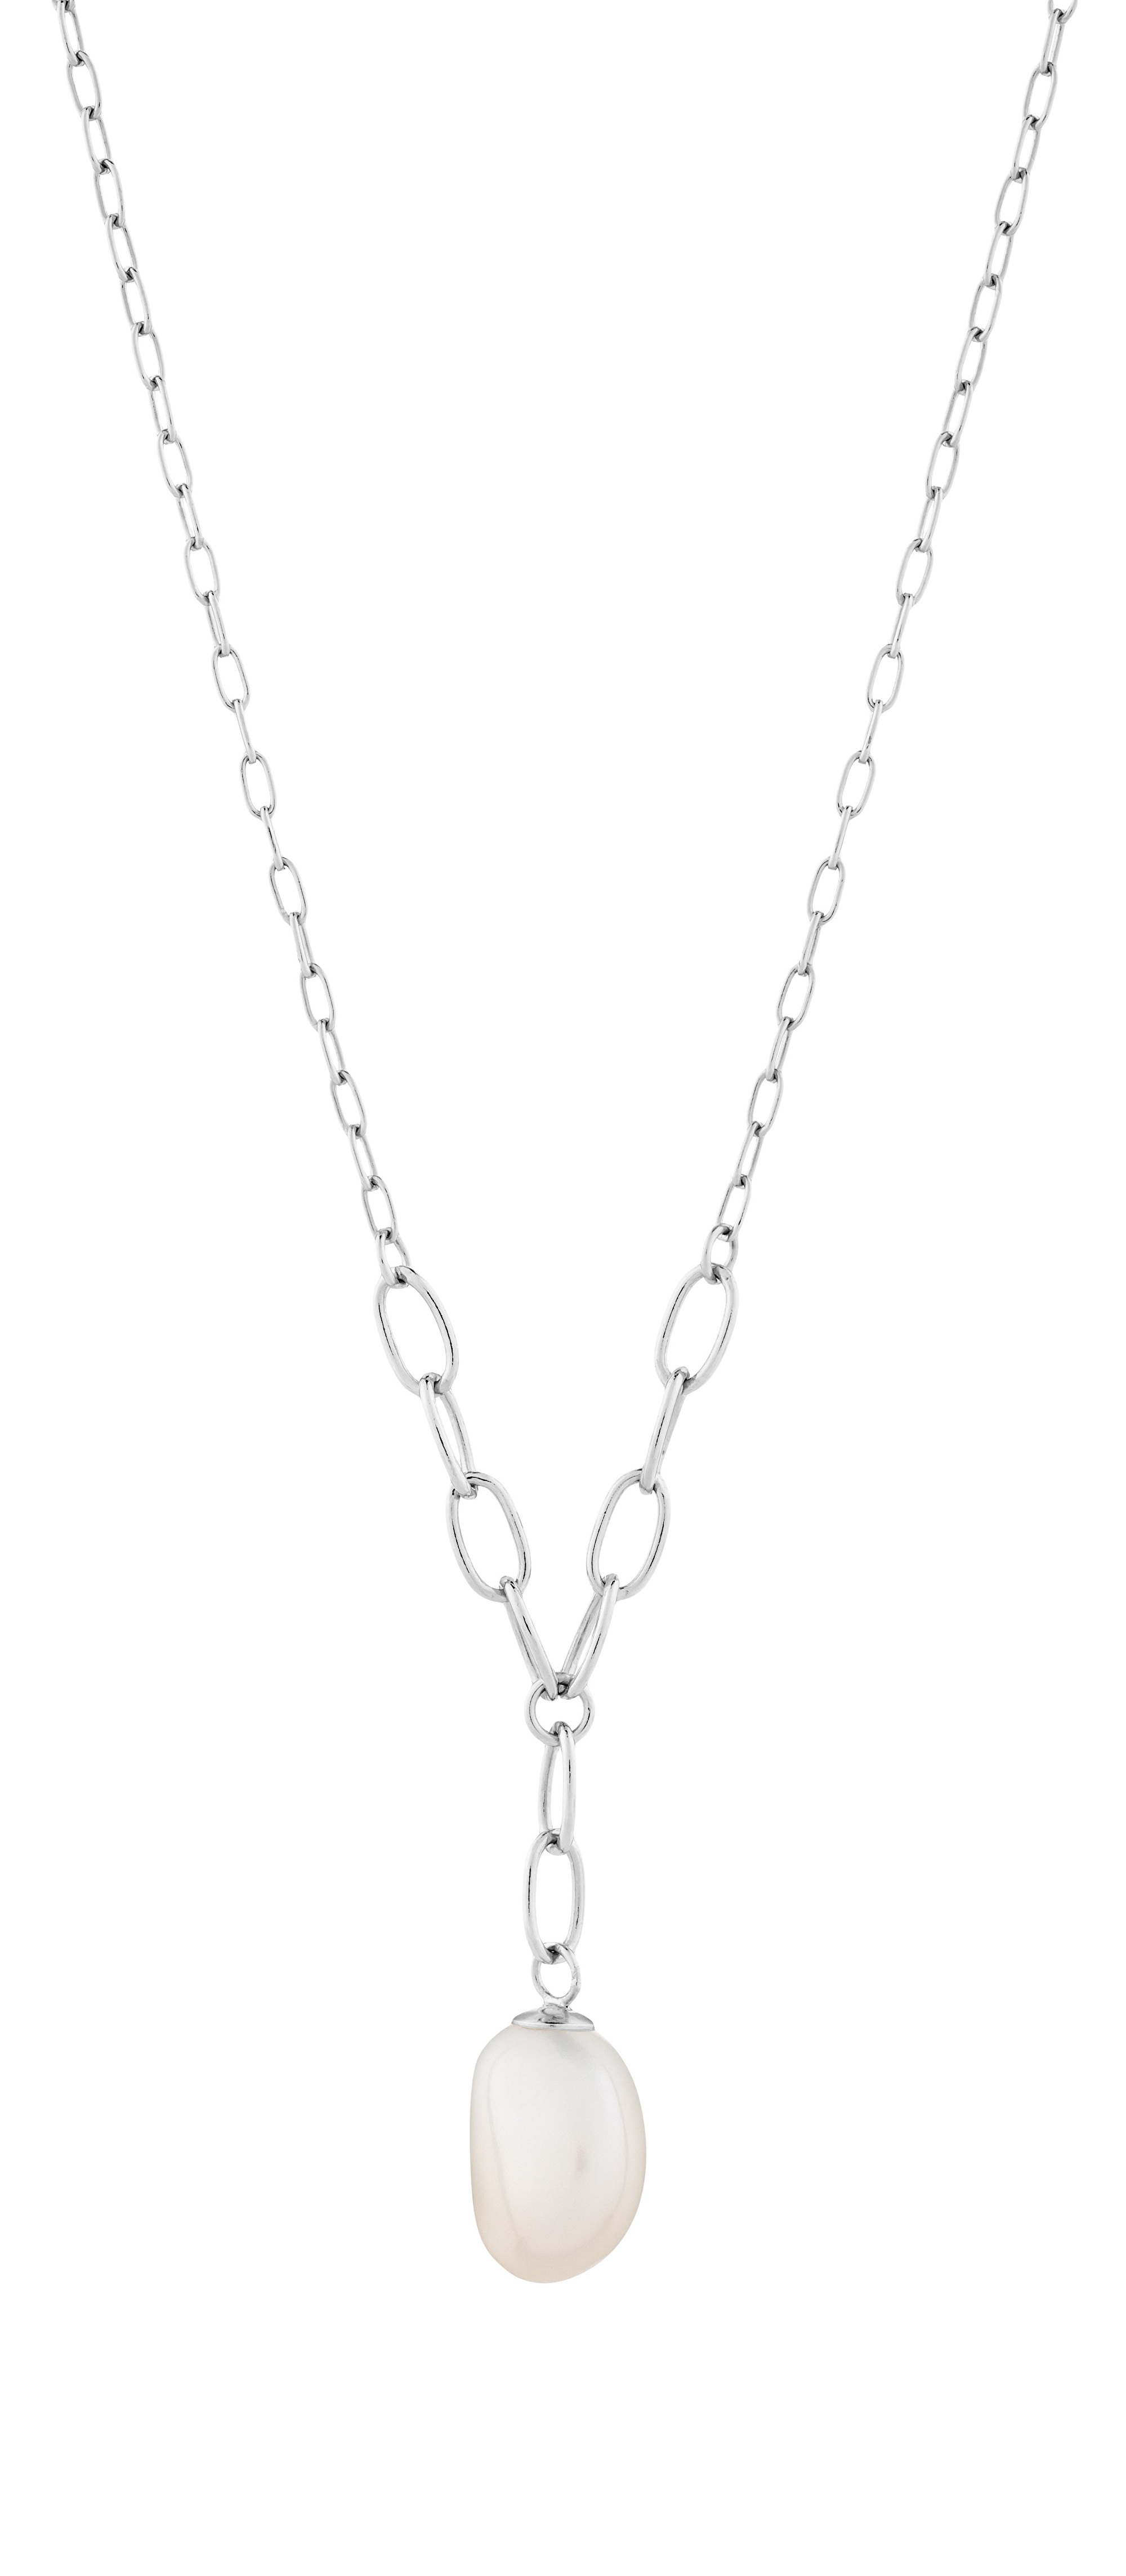 Preciosa Něžný stříbrný náhrdelník s pravou perlou Pearl Heart 5356 01